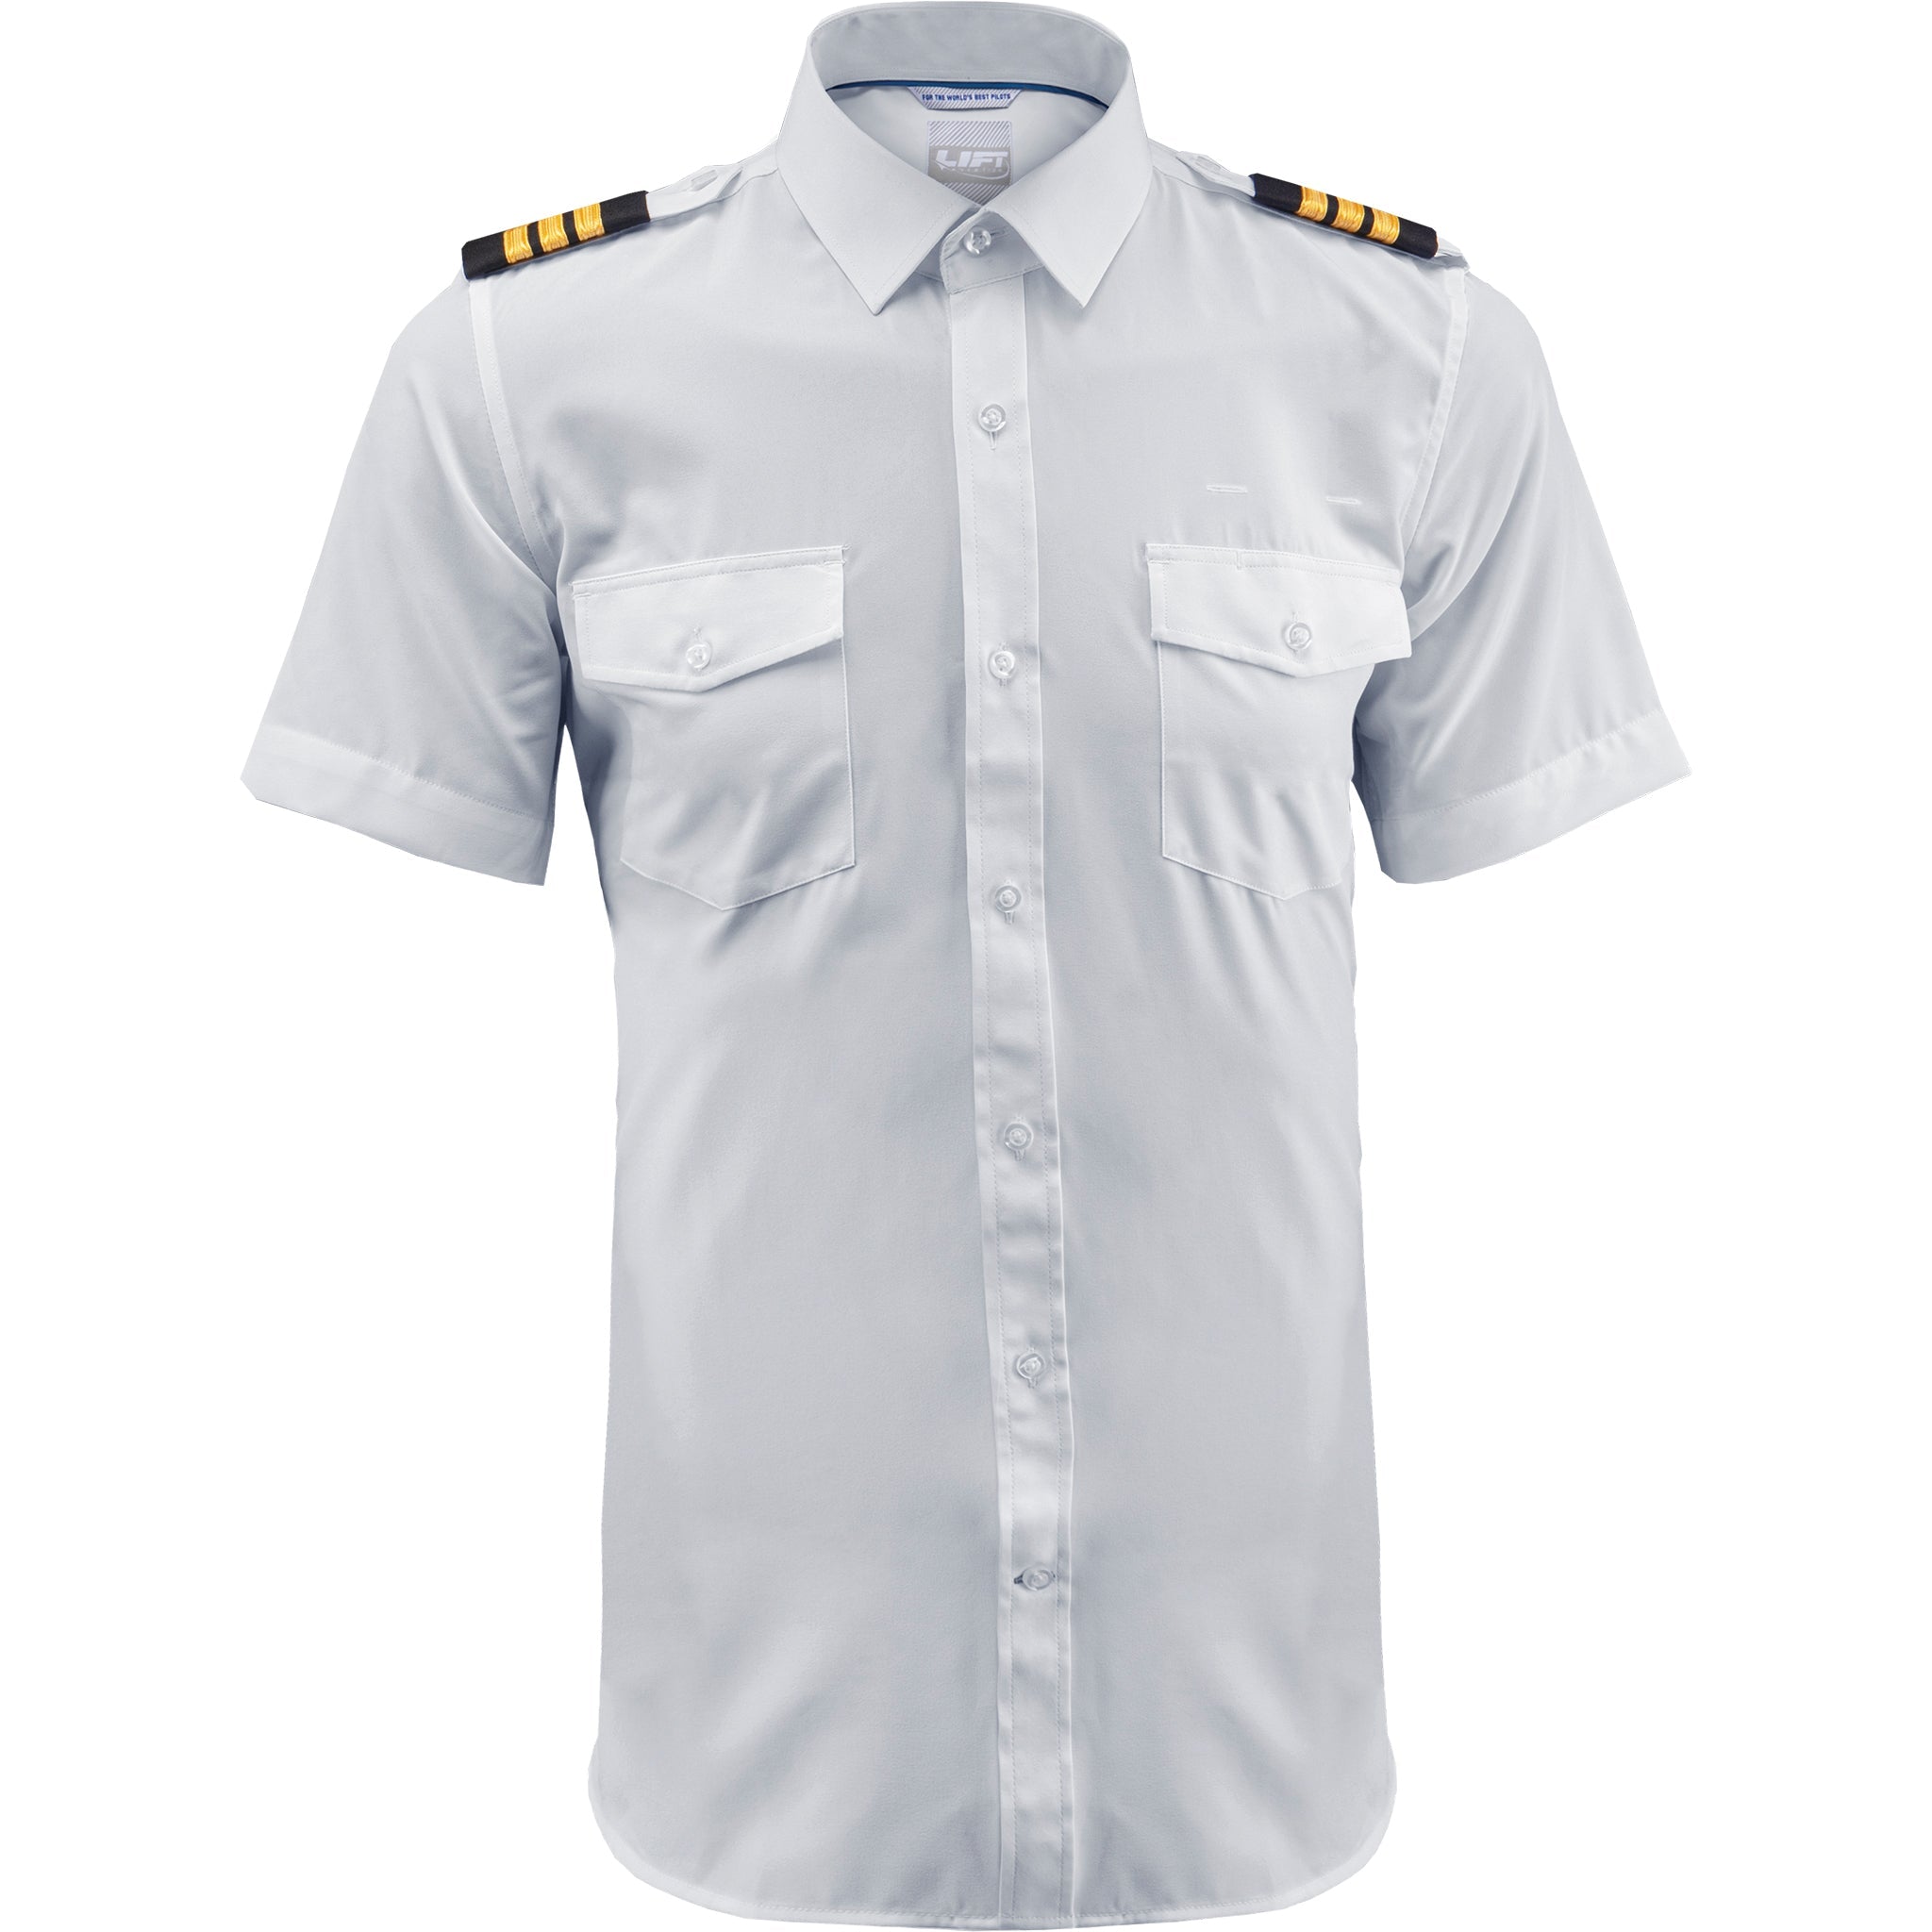 Lift Aviation Flextech Professional Pilot Short Sleeve Shirt (With Eyelets) - PilotMall.com